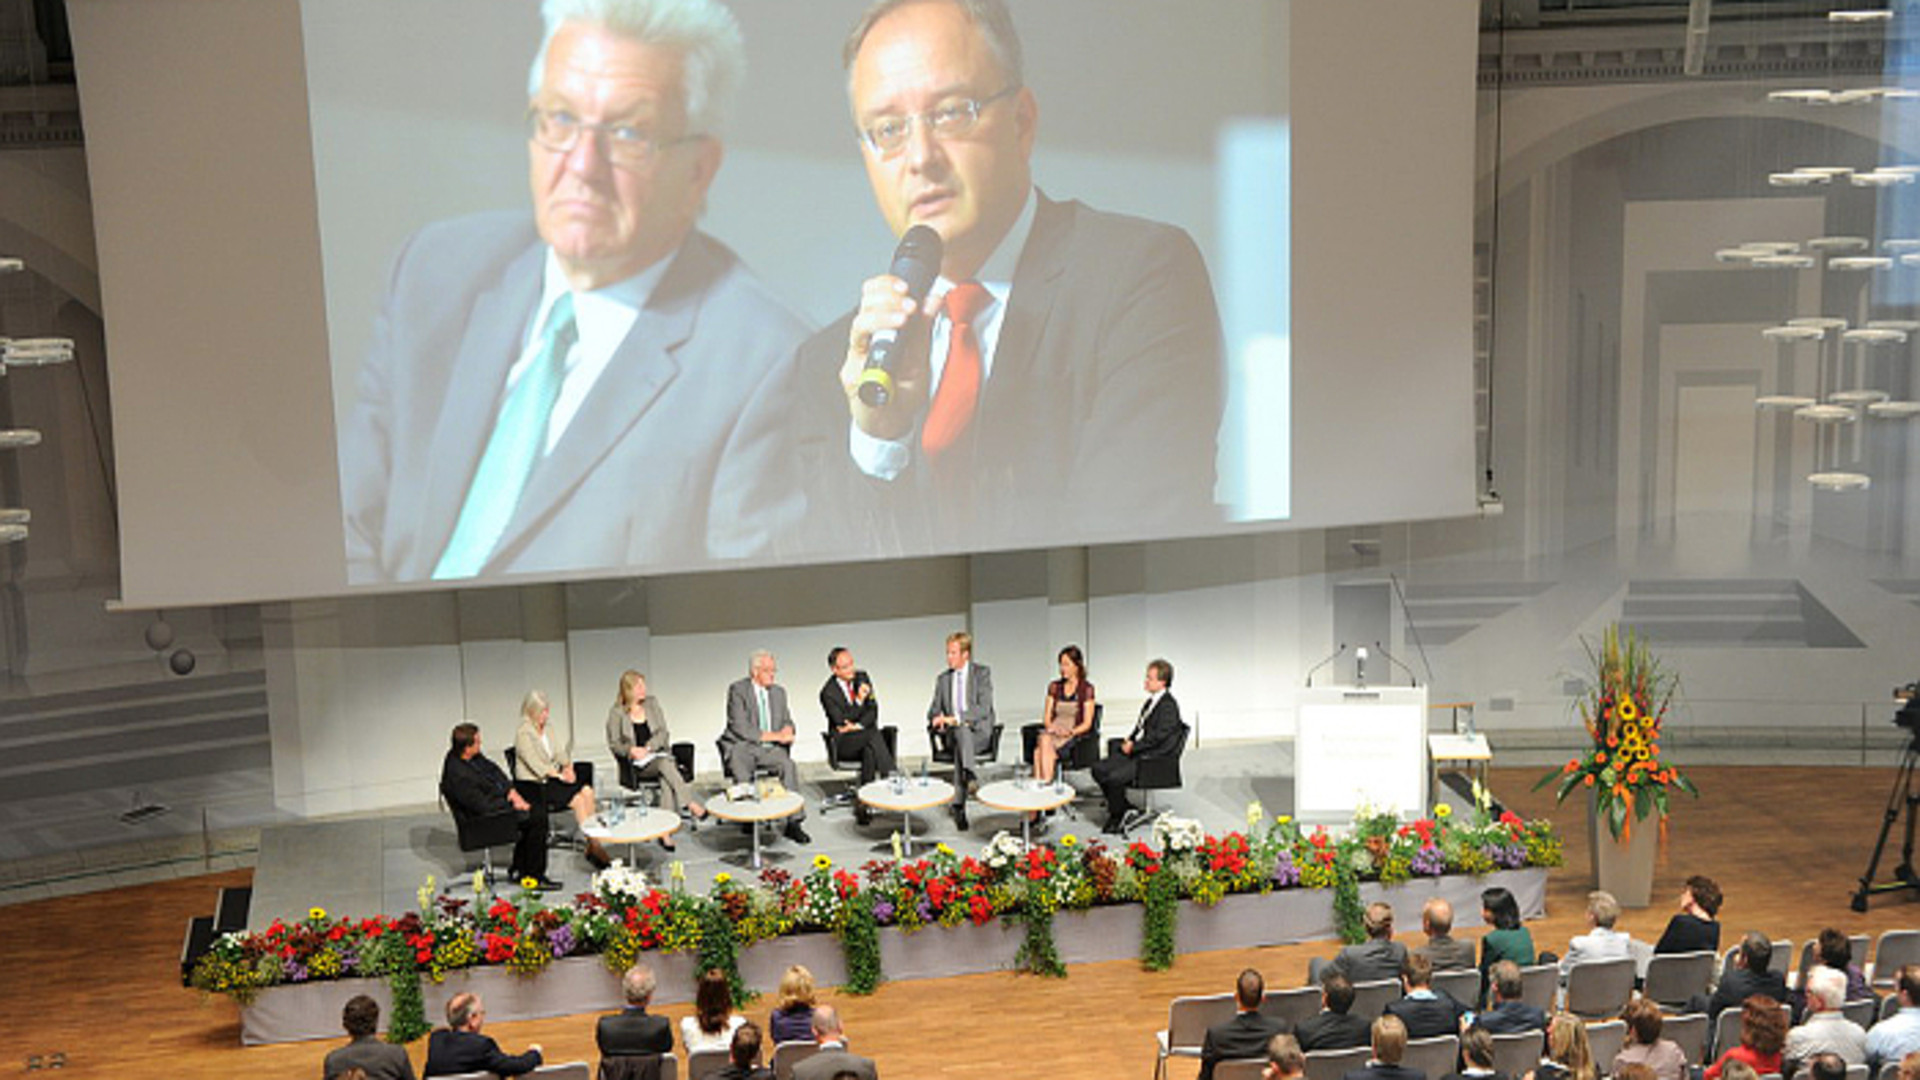 Podiumsdiskussion „Gemeinsam gute Schule machen“, mit Ministerpräsident Winfried Kretschmann und Kultusminister Andreas Stoch am 12. Juli 2014 im Haus der Wirtschaft in Stuttgart.